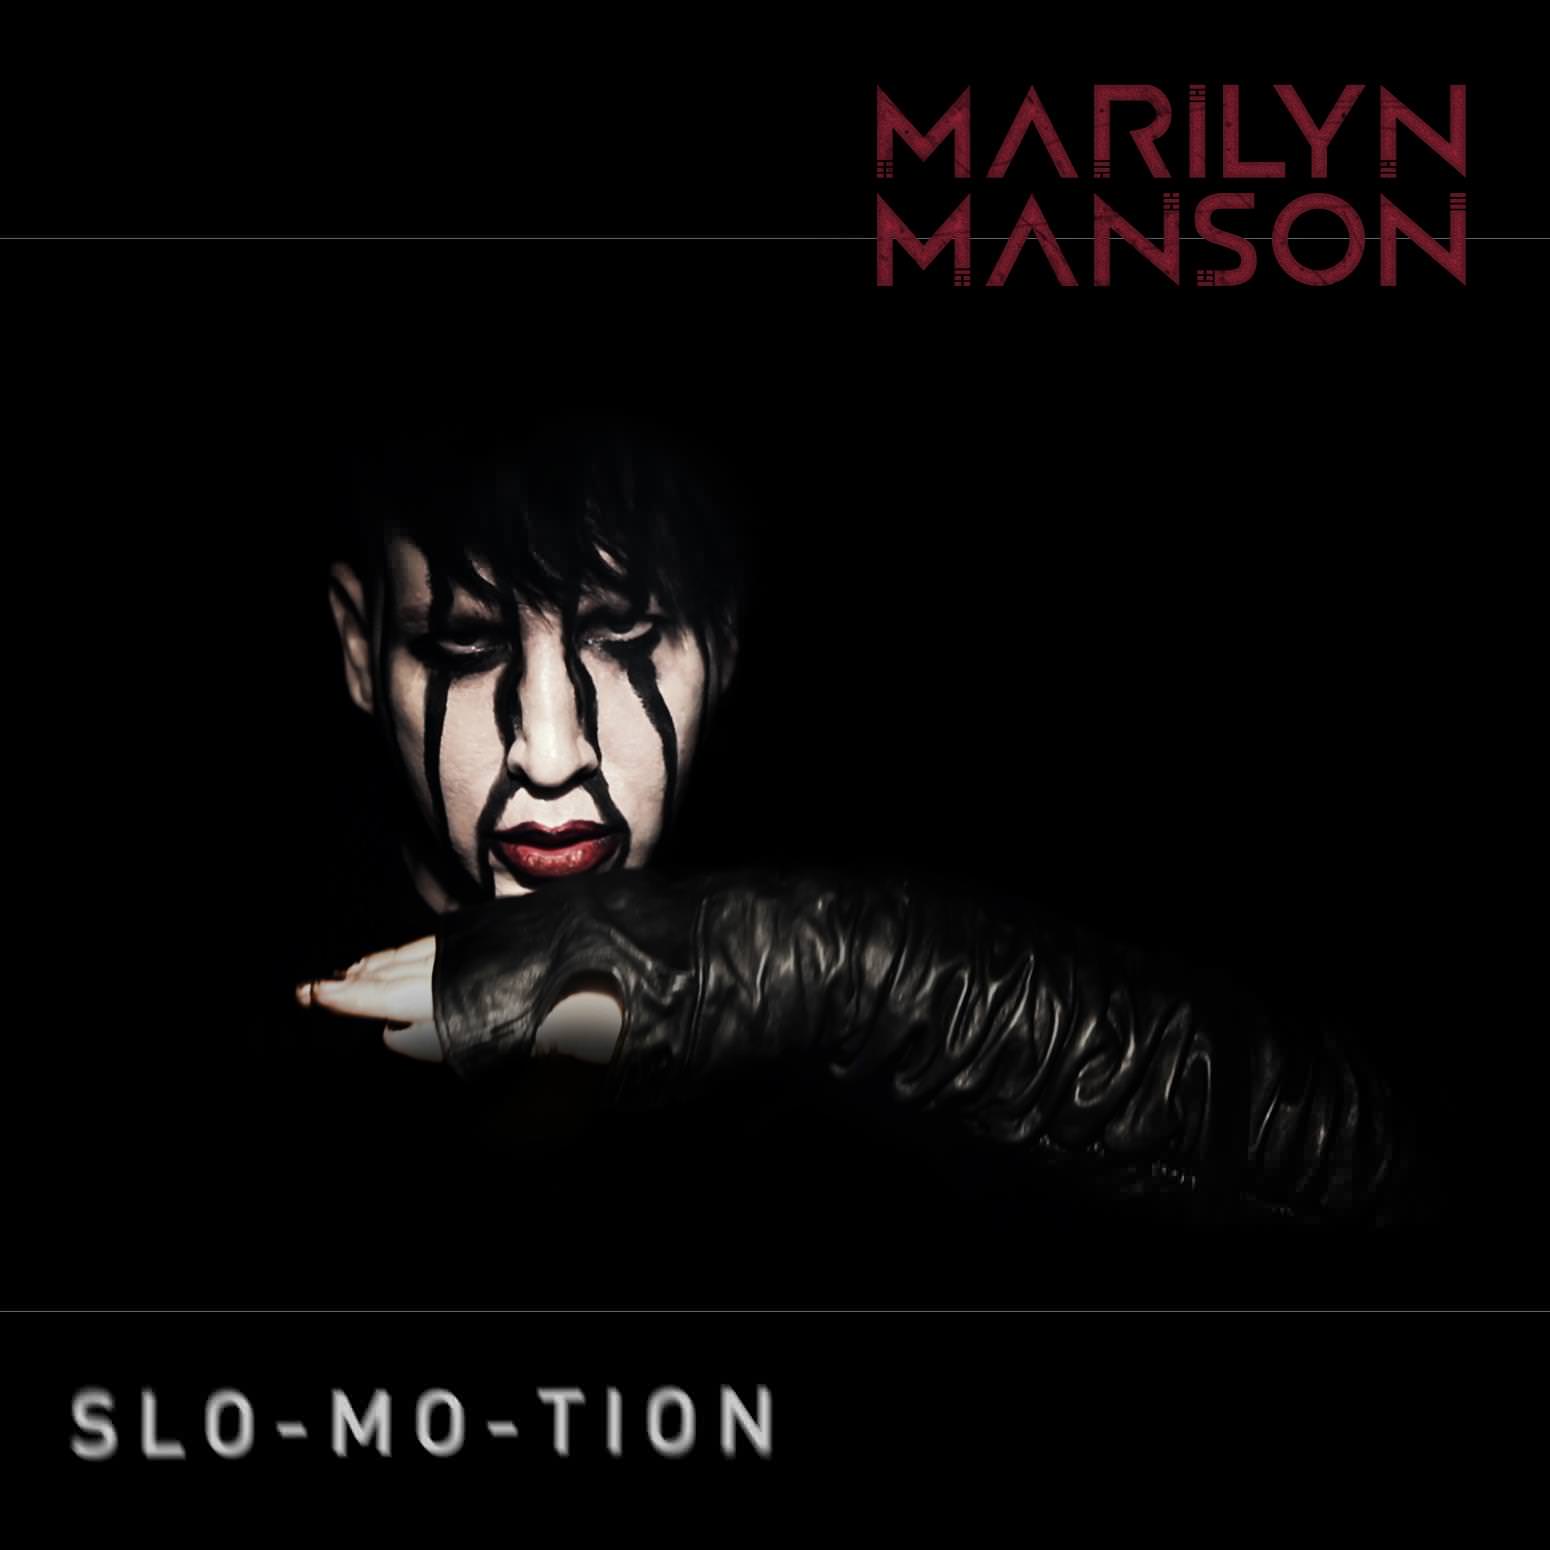 marilyn manson   anglijjskijj po pesnyam4 Marilyn Manson   англійська пісень